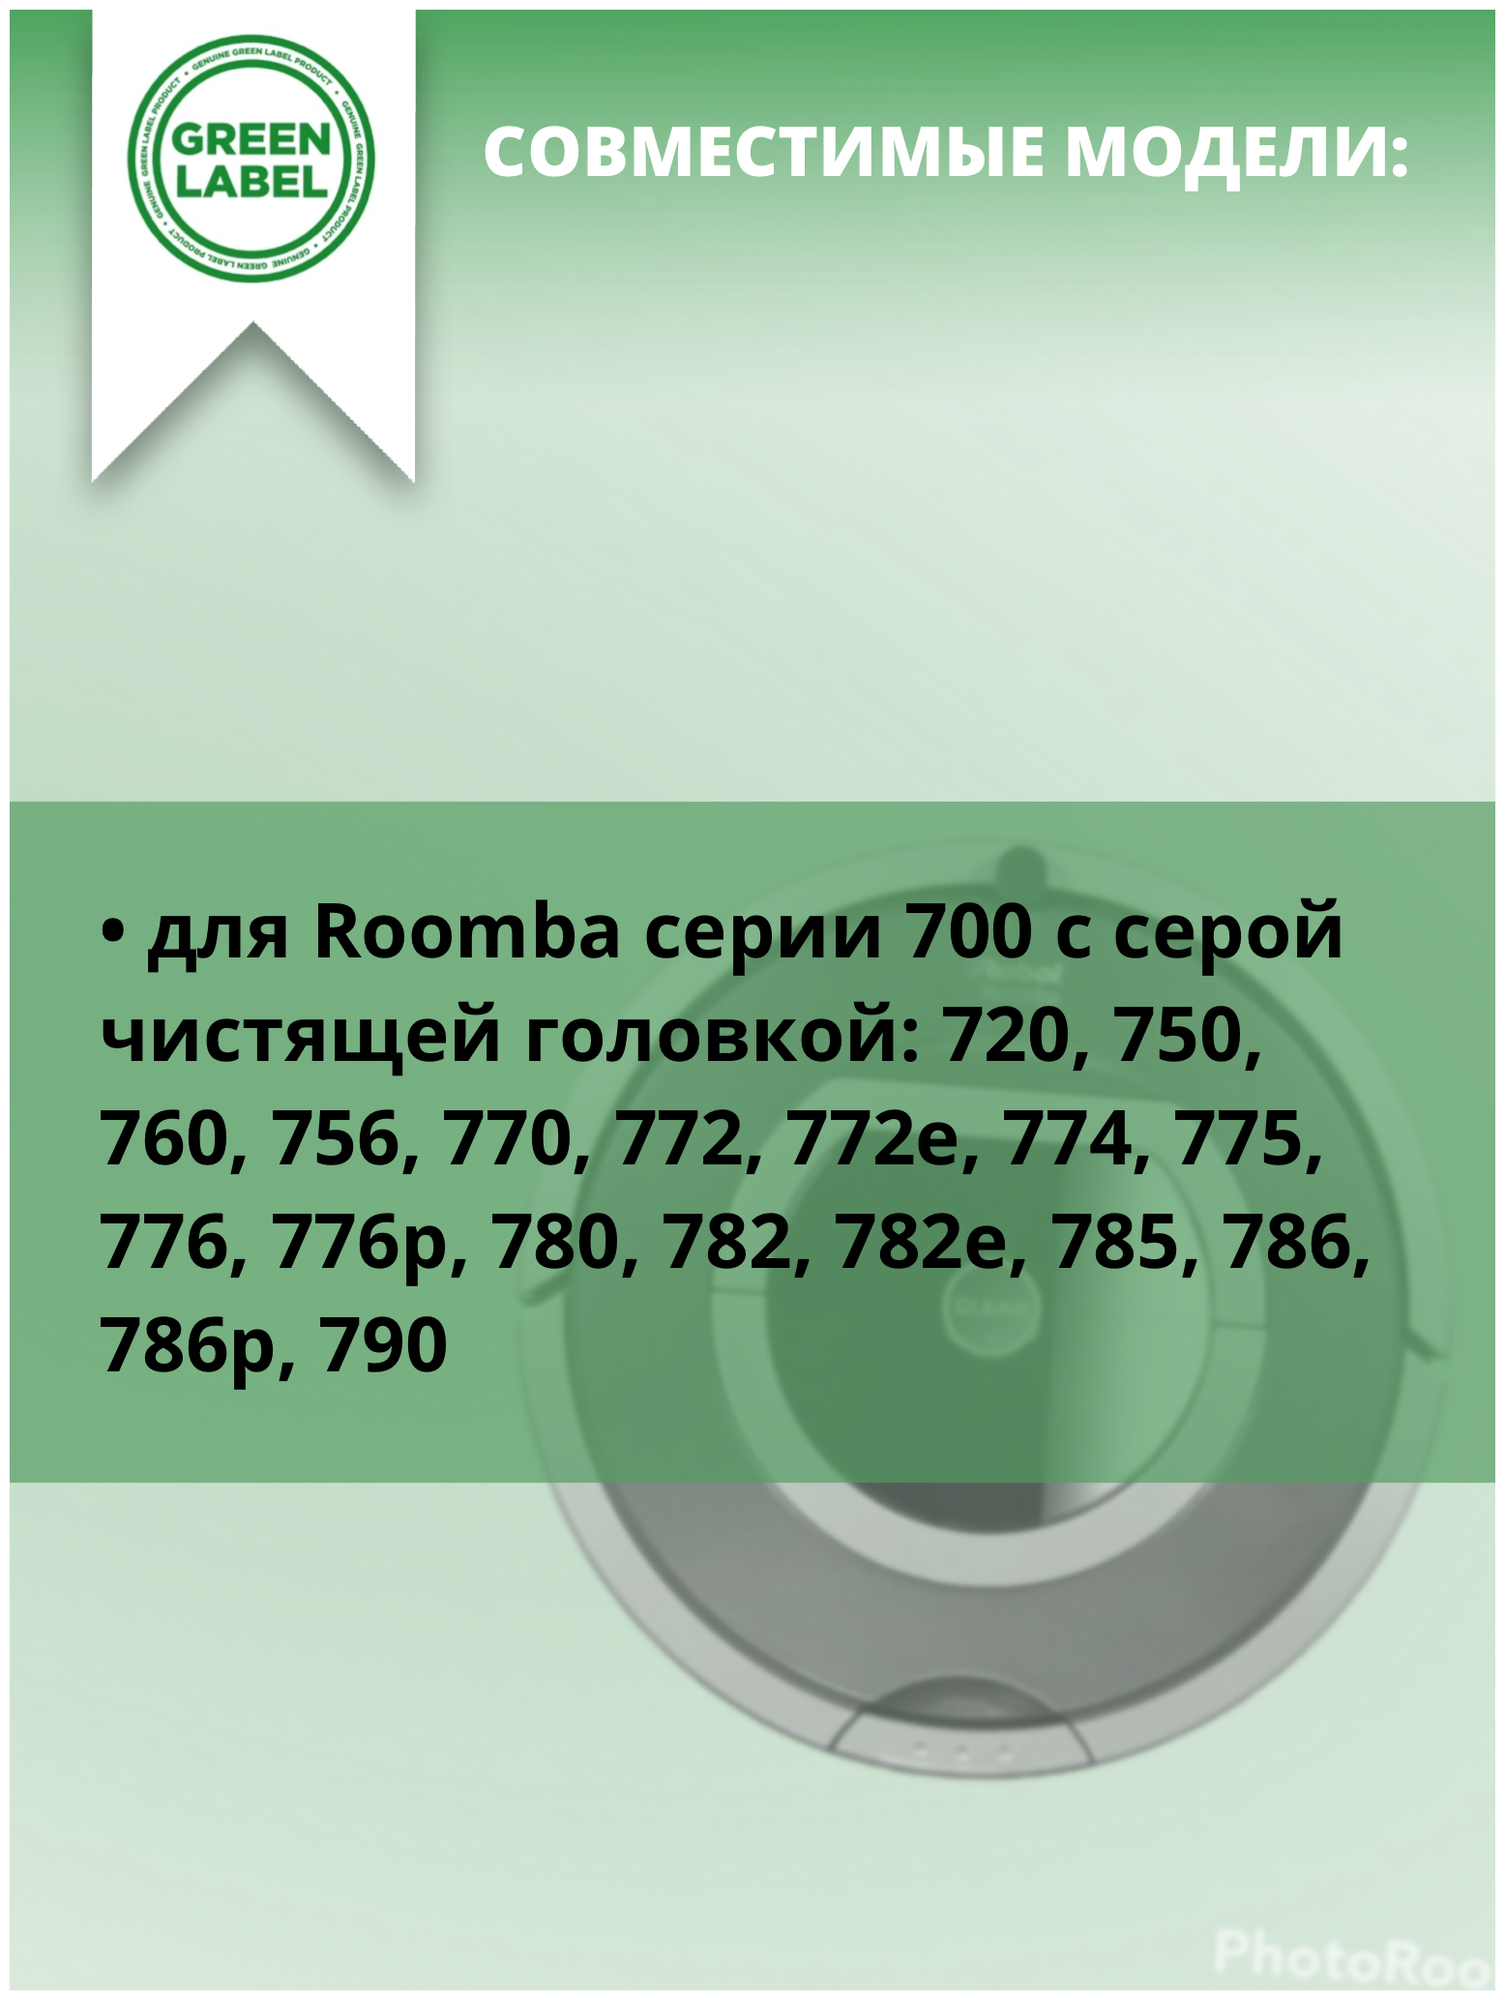 Набор фильтров и щёток для iRobot Roomba серий 700 с серой чистящей головкой 720, 750, 760, 756, 770, 772, 772e, 774, 775, 776, 776p, 780 - фотография № 8